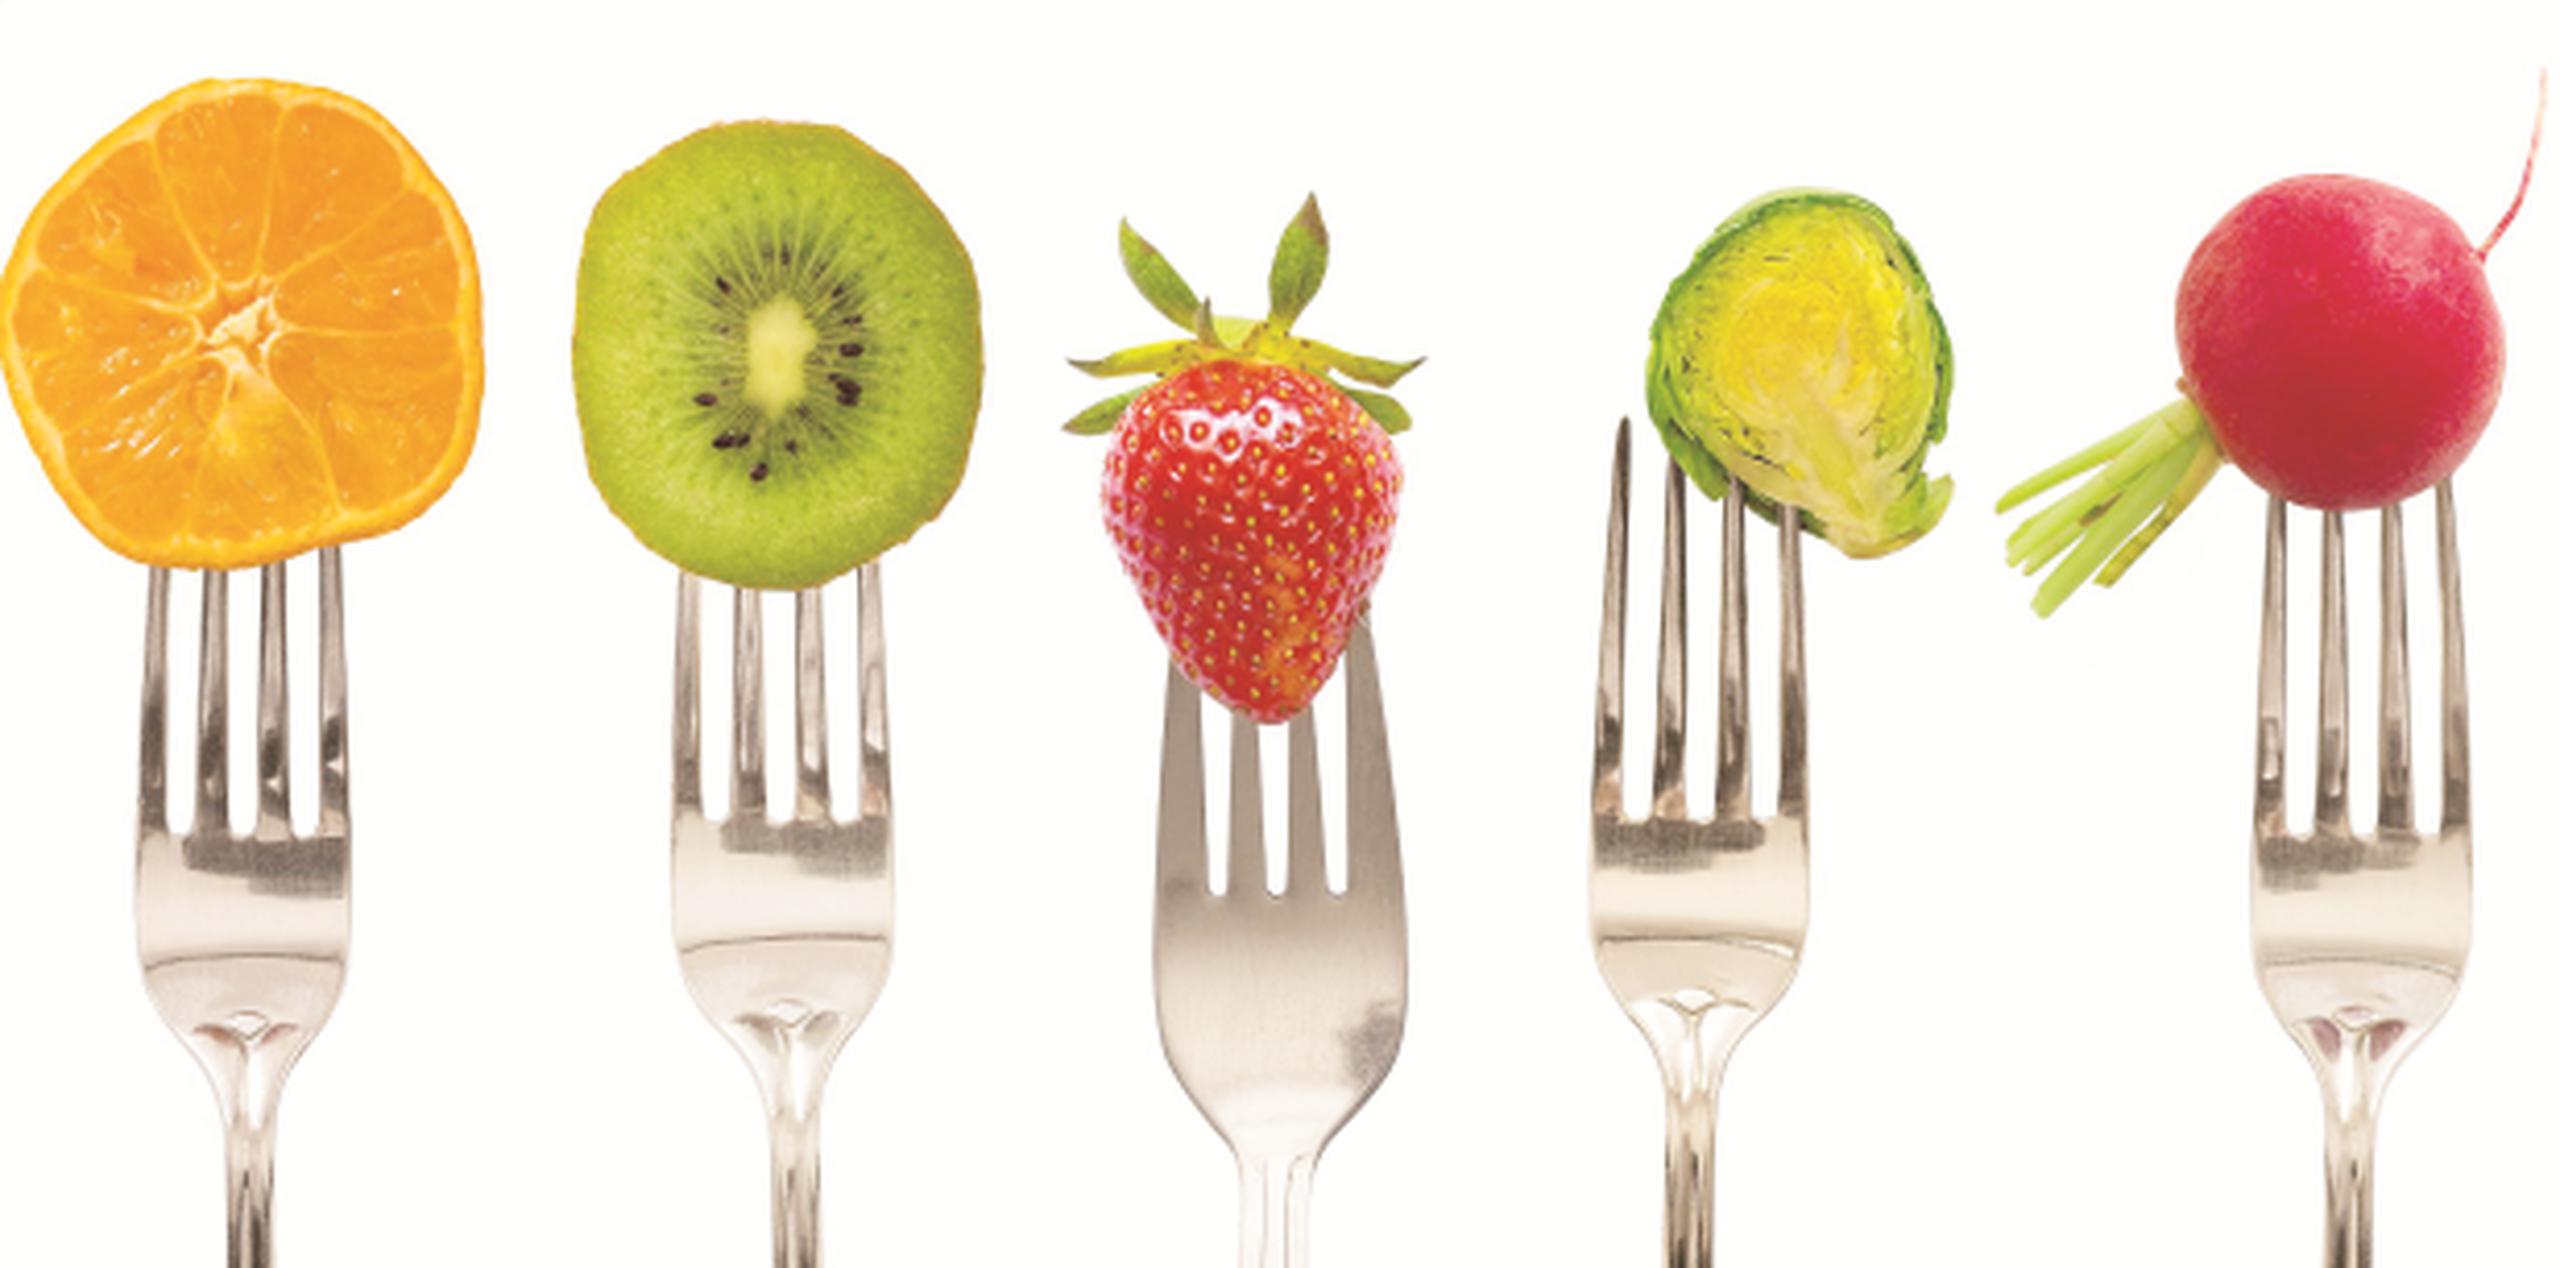 El peligro de las dietas detox es que normalmente no respetan ninguna tabla nutricional y proponen reemplazar todas las comidas por licuados de vegetales y frutas. (Archivo)